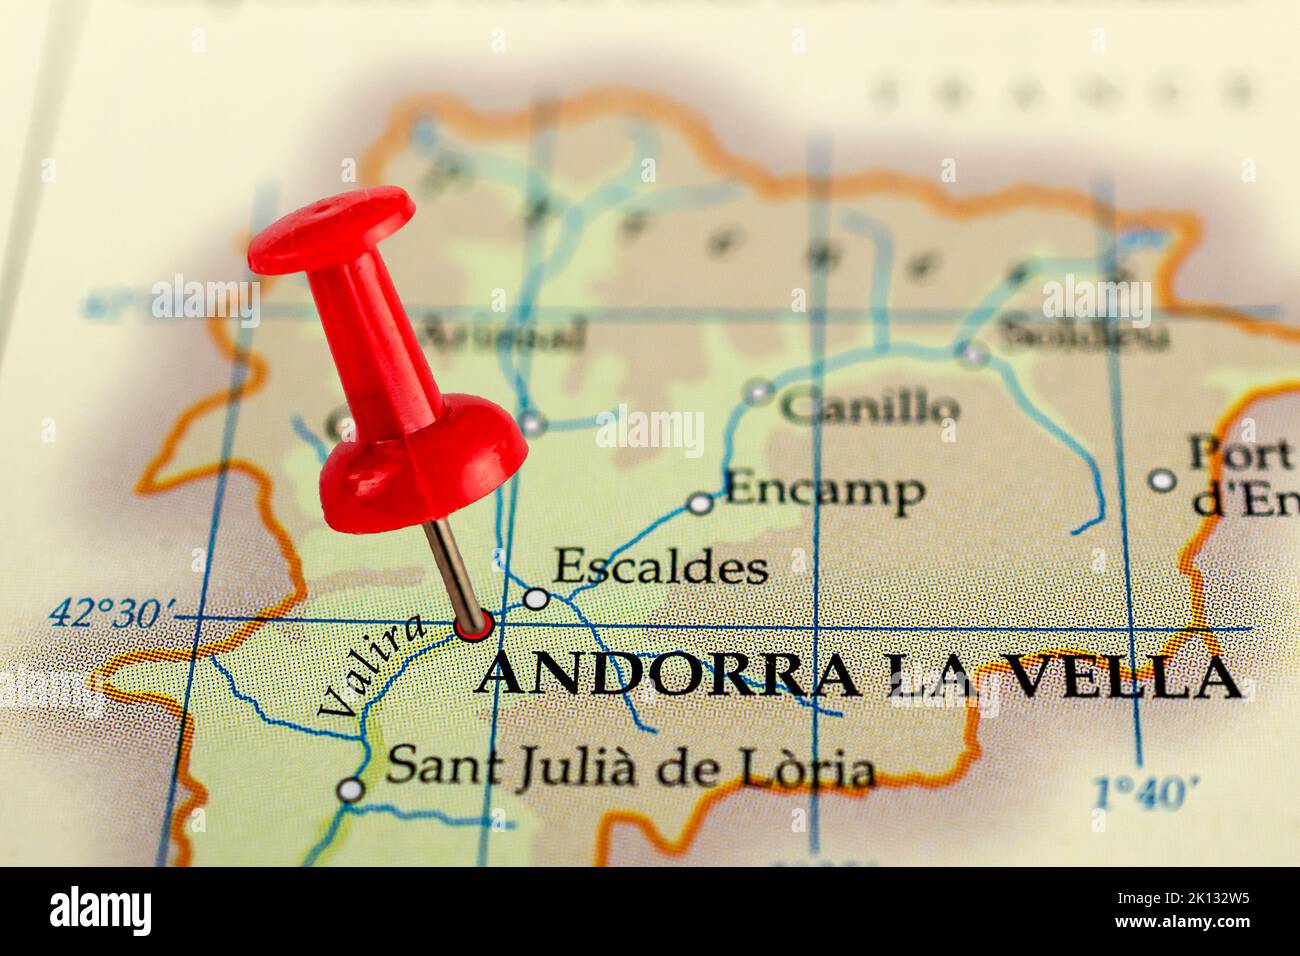 Andorra la vella map. Close up of Andorra la vella map with red pin. Map with red pin point of Andorra la vella in Andorra. Stock Photo